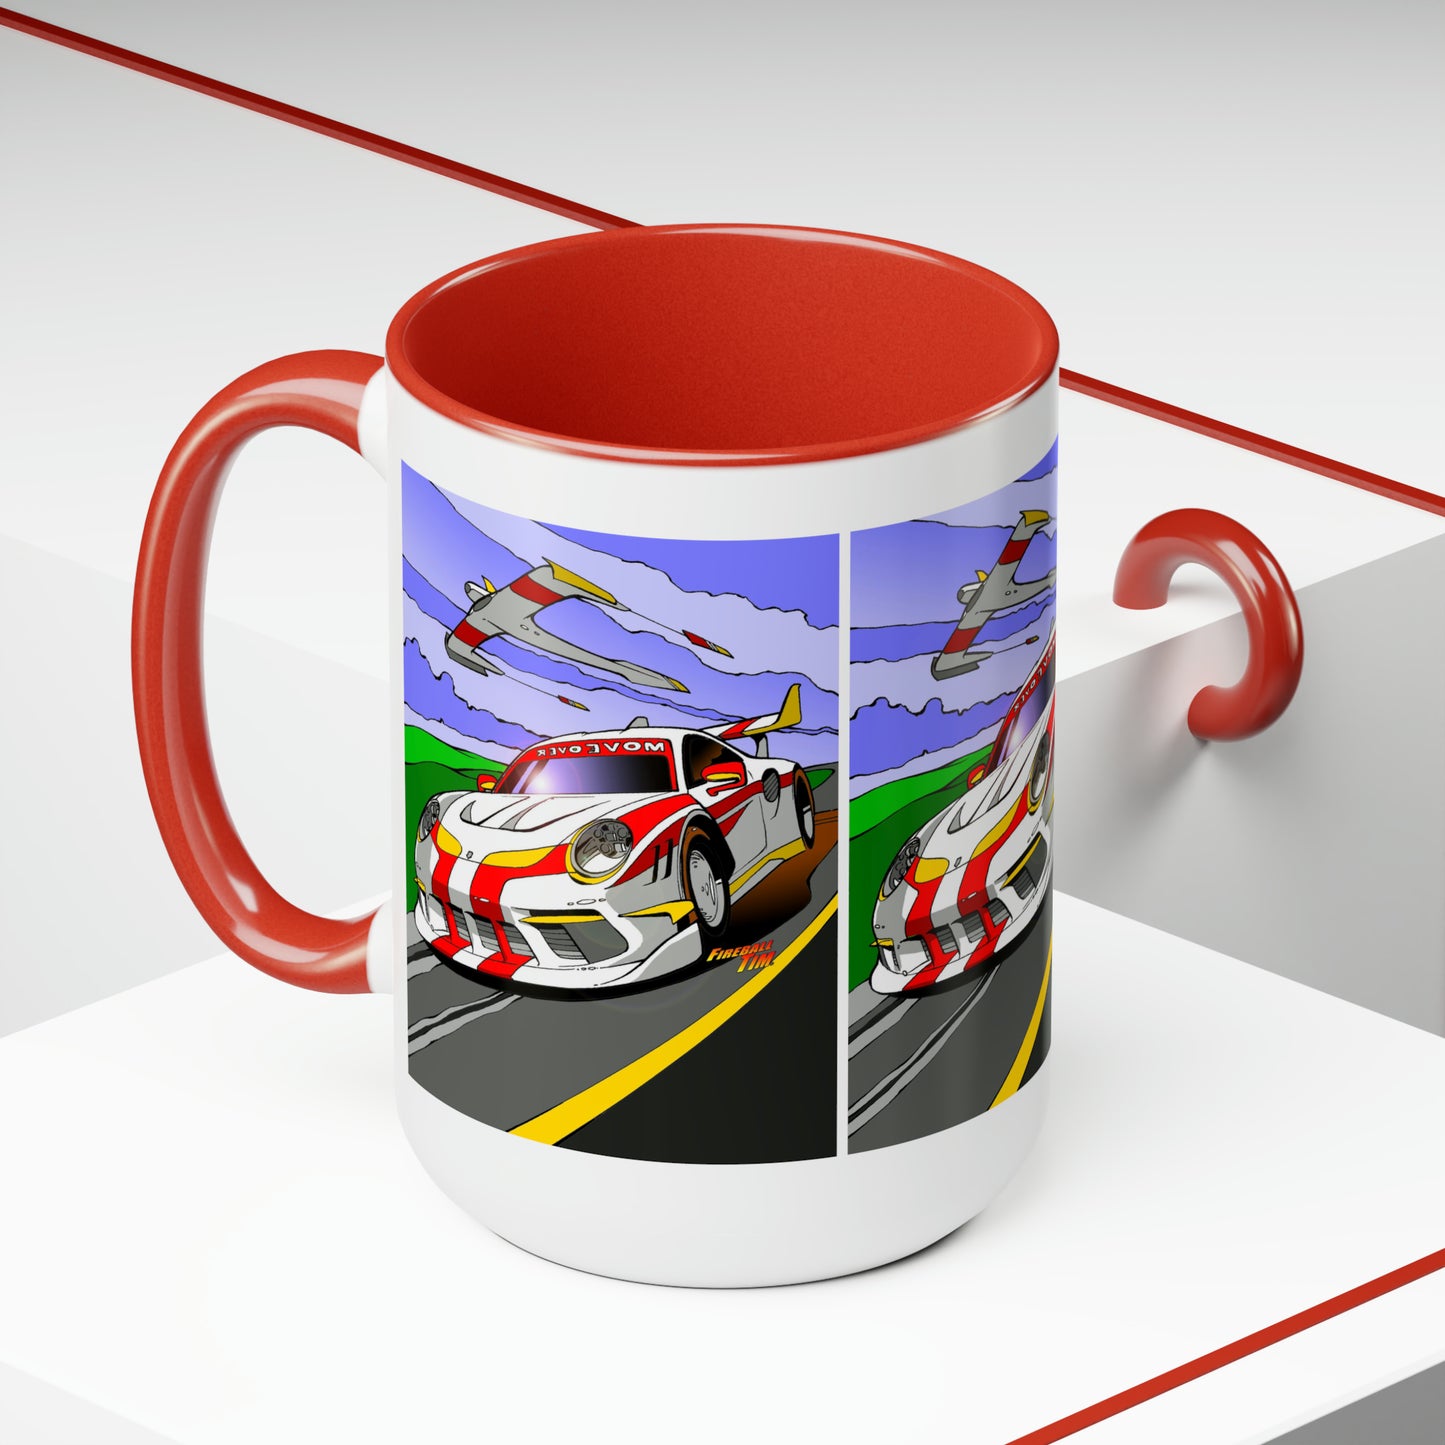 CONCEPT 911 Coffee Mug, 15oz, Illustration, 911, Car Mug, Car, Cars, Race Car Mug